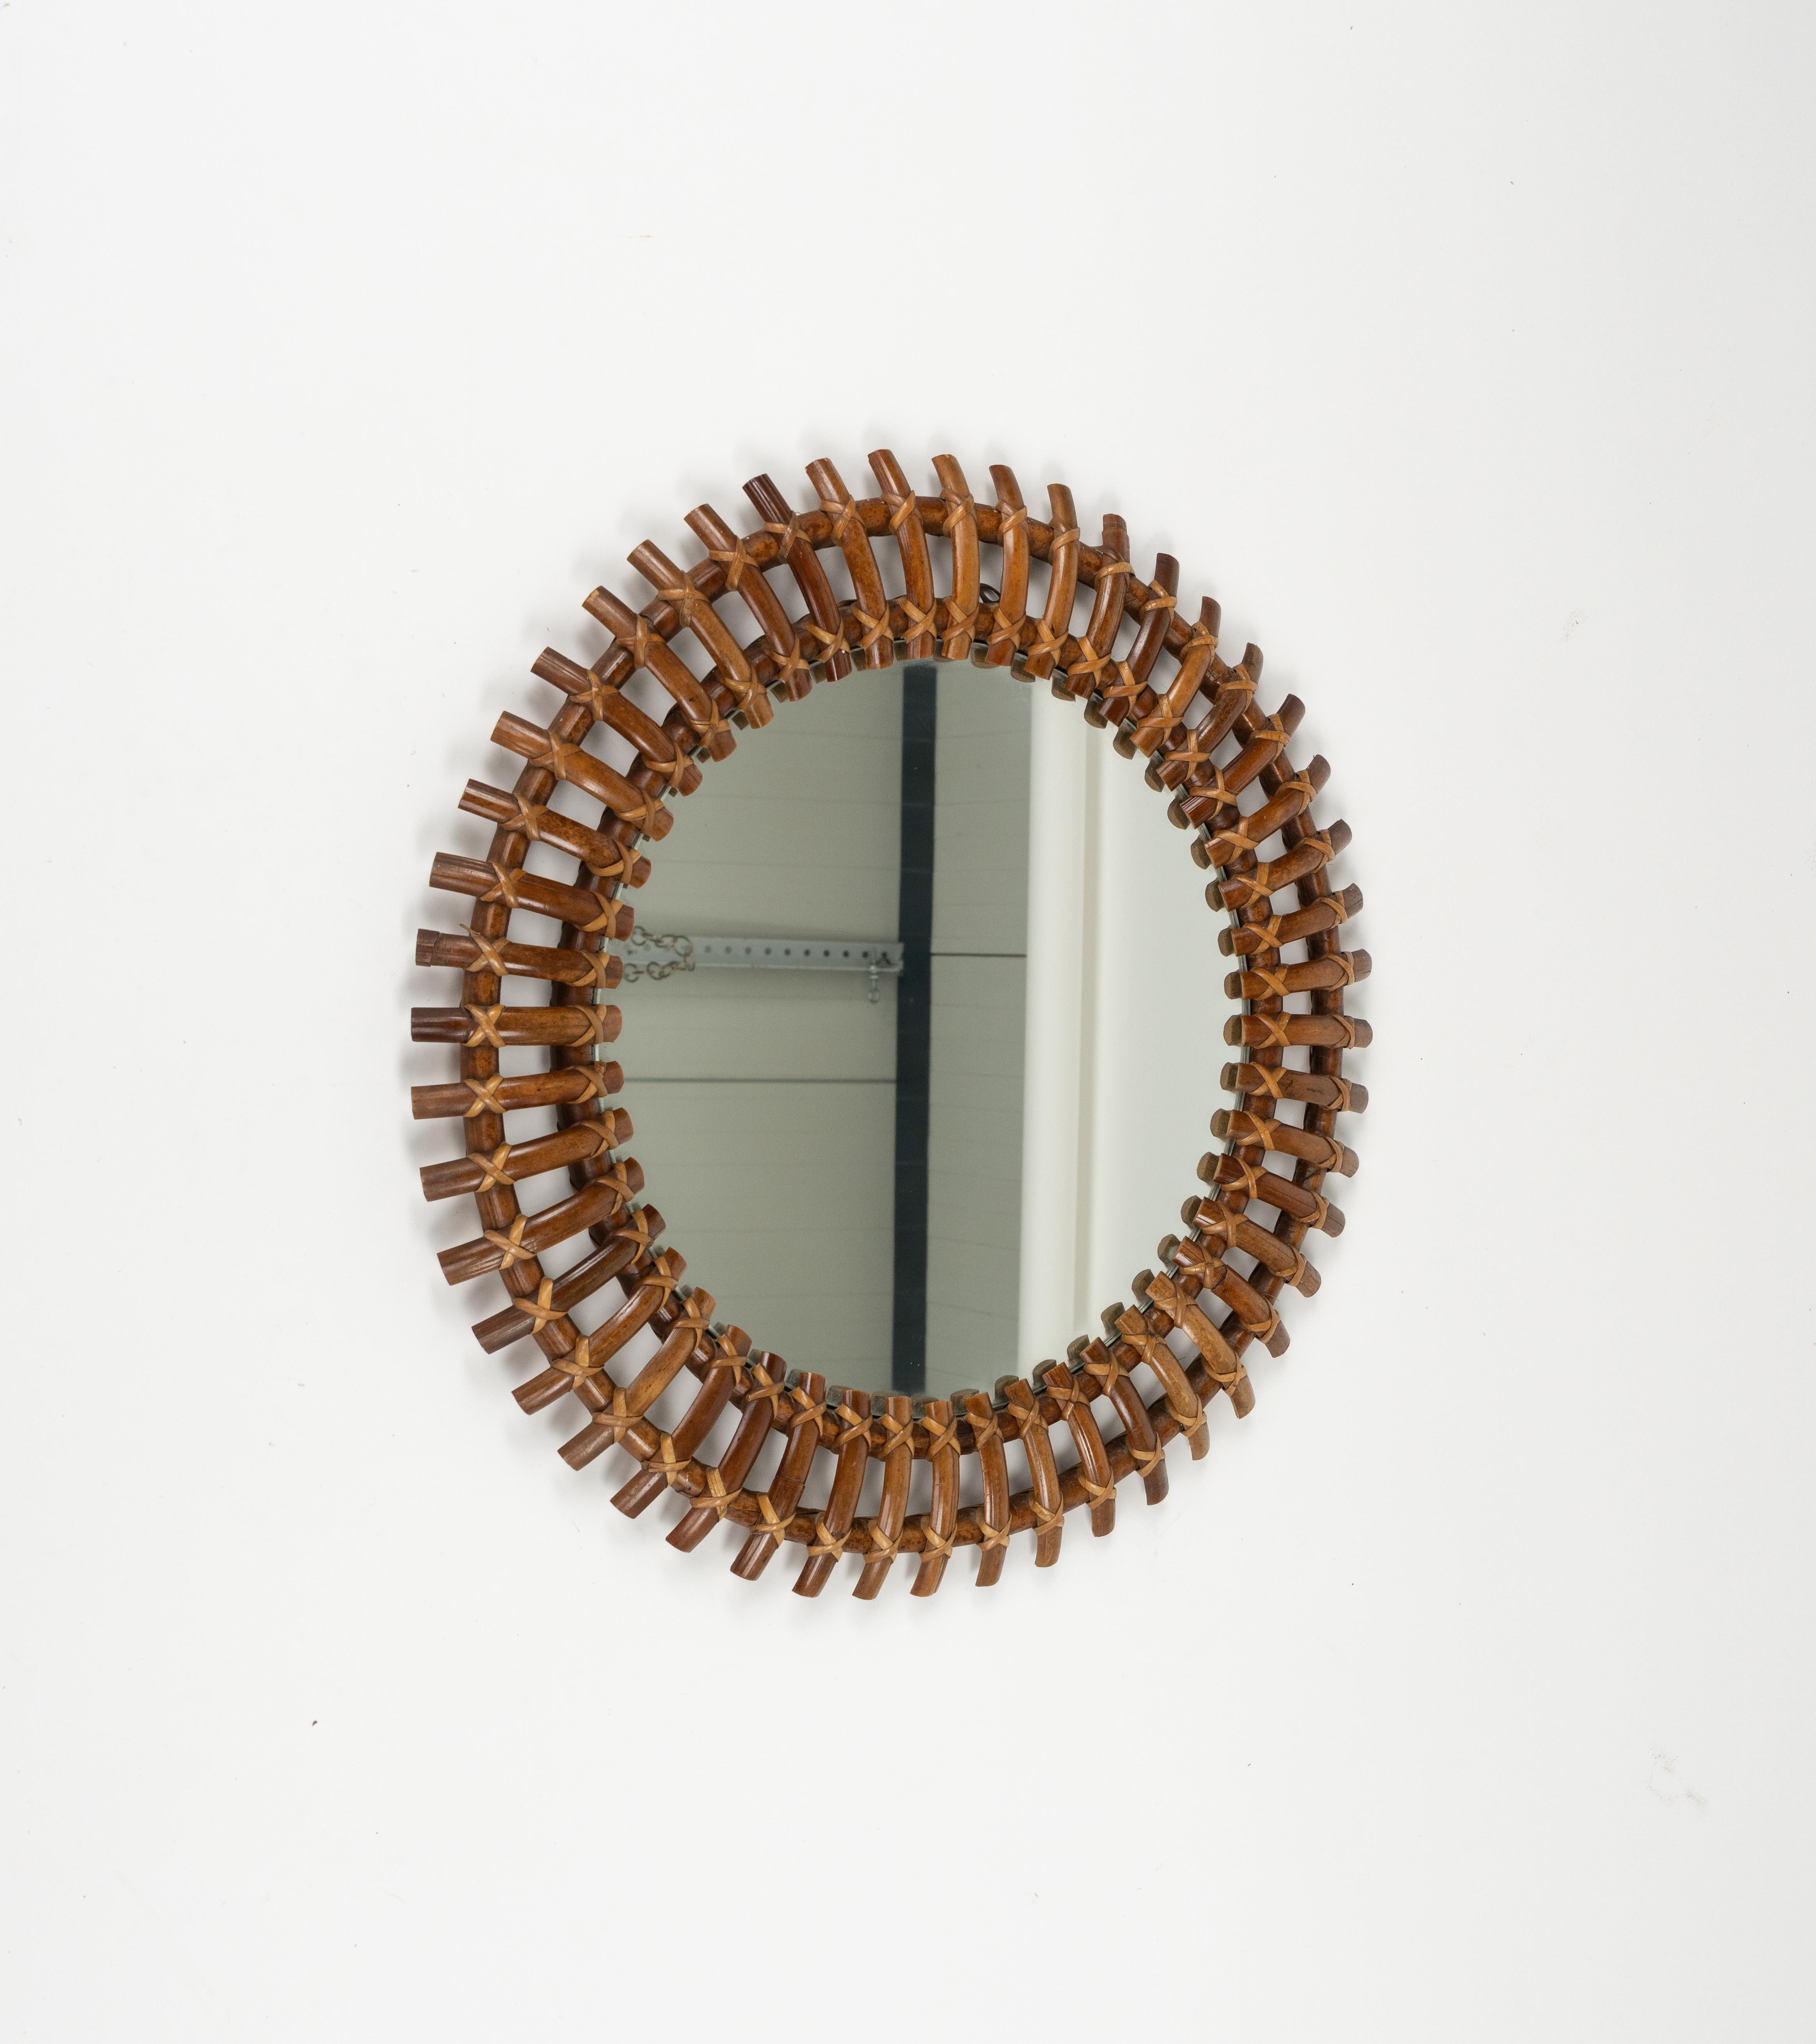 Italian Midcentury Rattan & Bamboo Sunburst Round Wall Mirror, Italy, 1960s For Sale